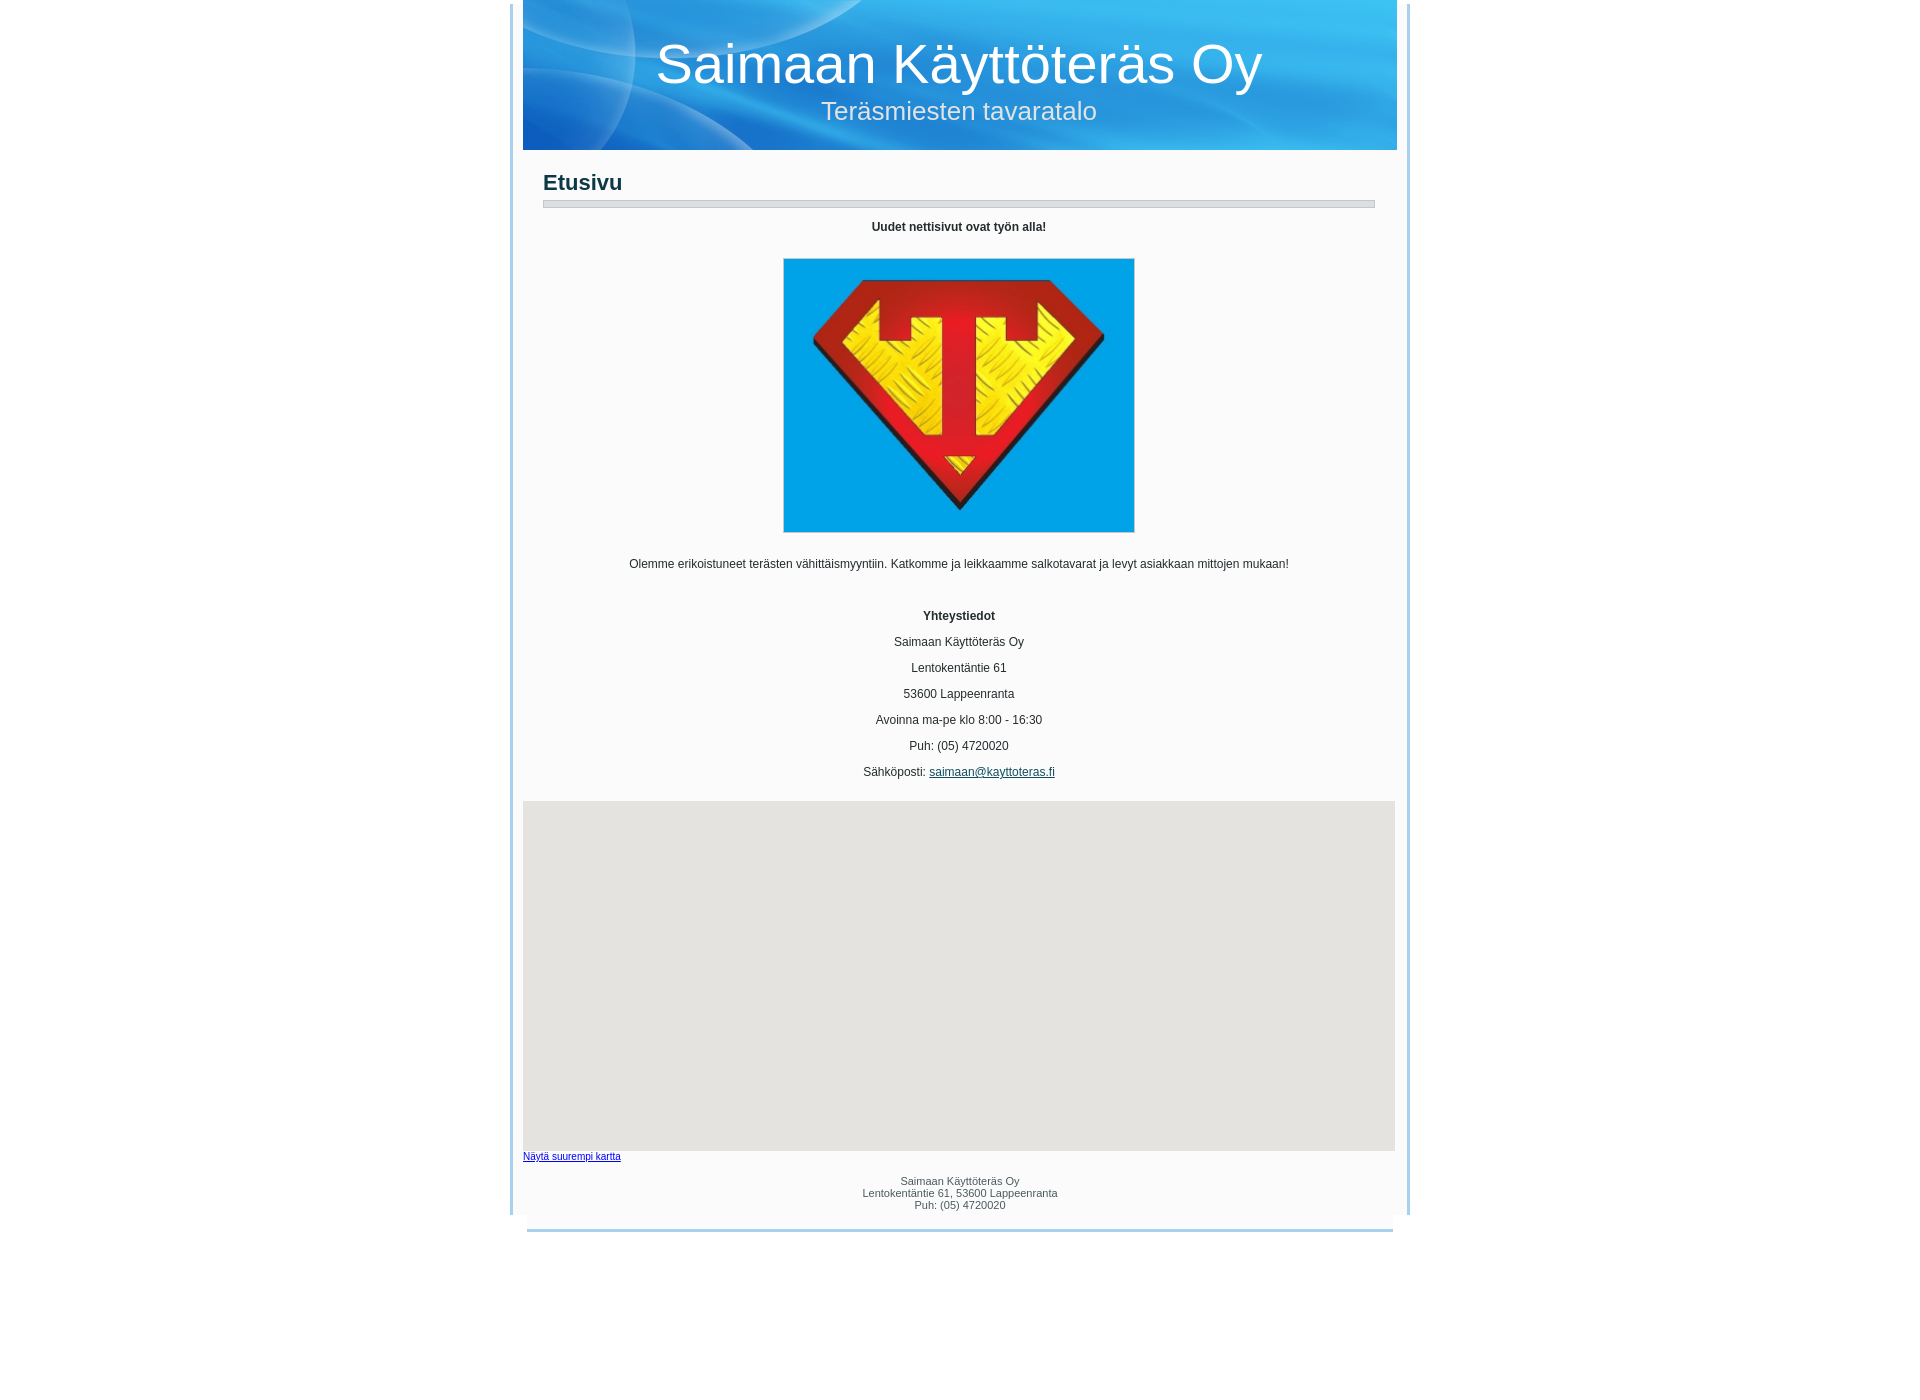 Skärmdump för kayttoteras.fi